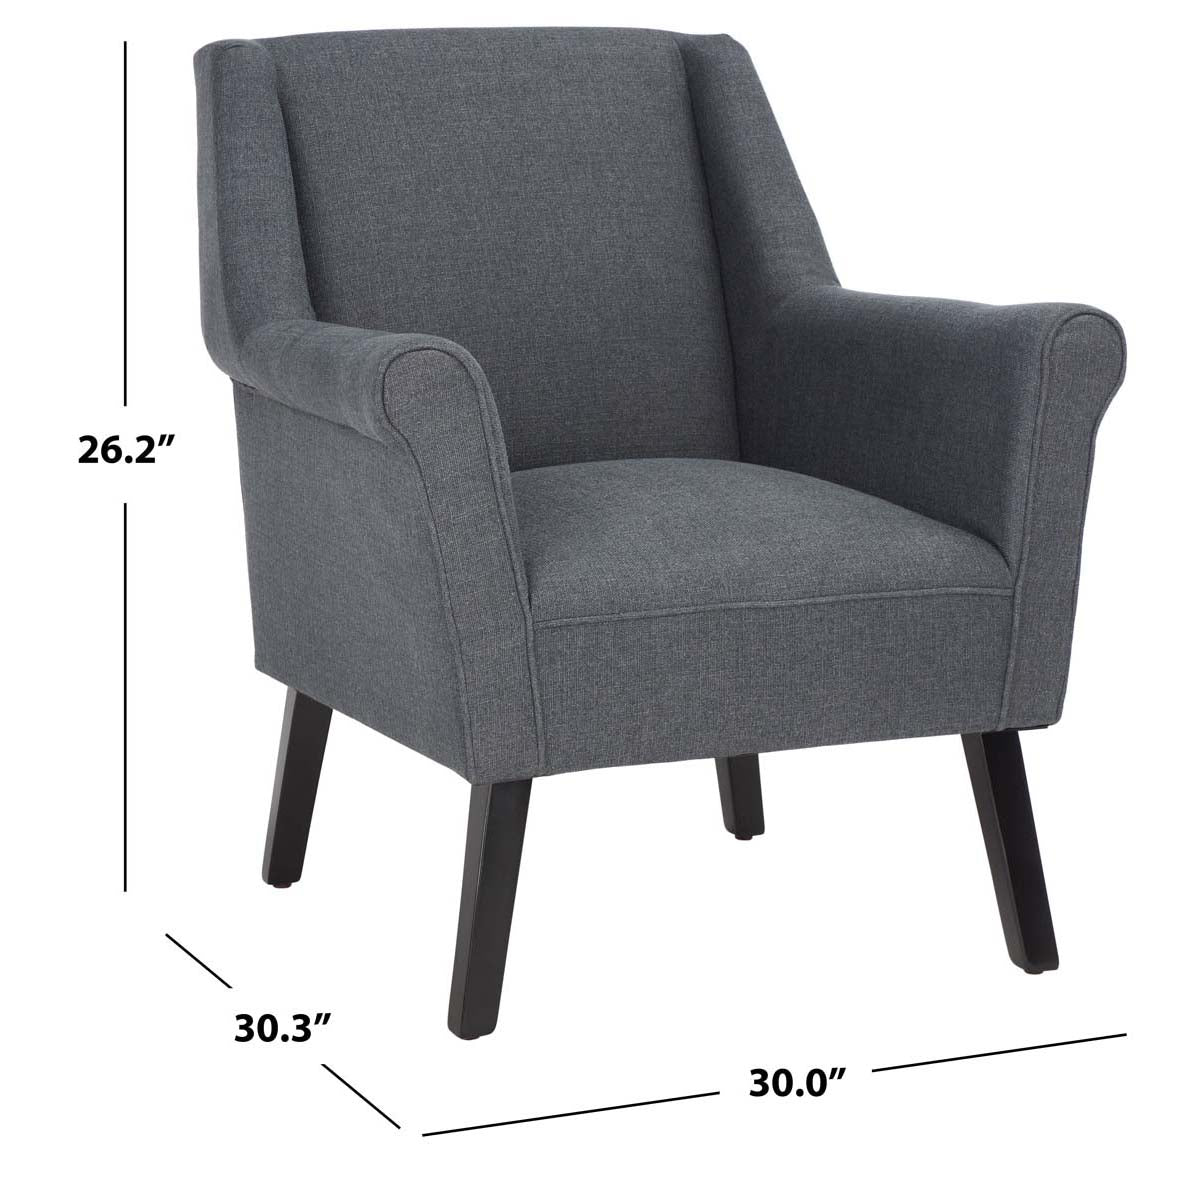 Safavieh Videl Accent Chair , ACH4011 - Dark Grey